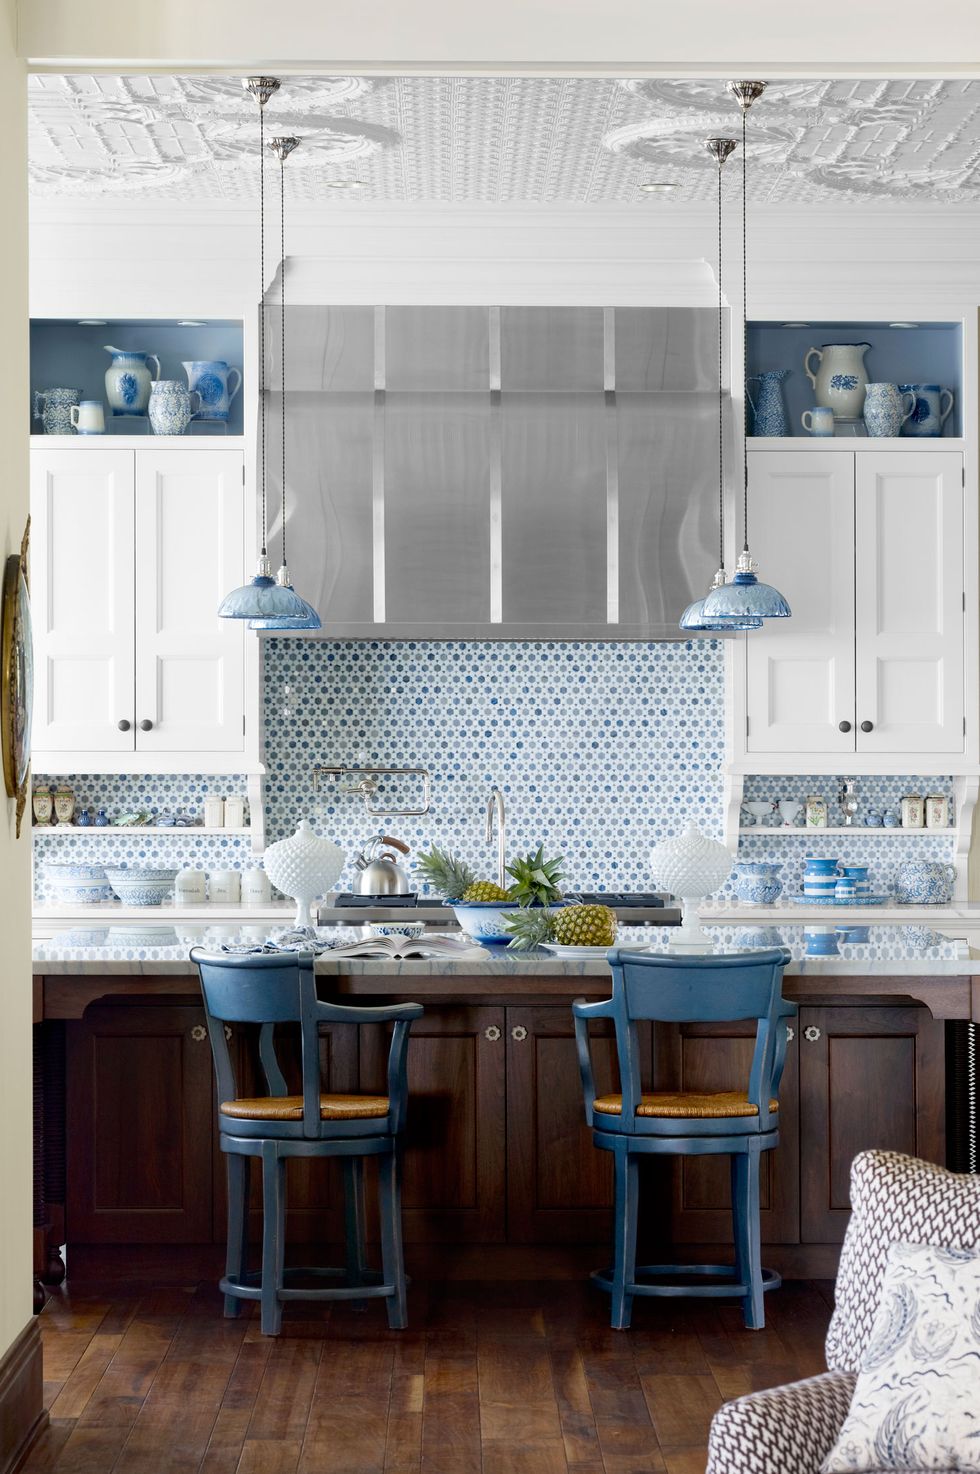 Gam màu xanh lam trong ý tưởng trang trí phòng bếp này được sử dụng rất tiết chế nhưng phân bố hài hòa, bao gồm: Hốc tường phía trên tủ bếp, backsplash, đèn thả trần và cặp ghế ngồi phong cách cổ điển sang trọng.